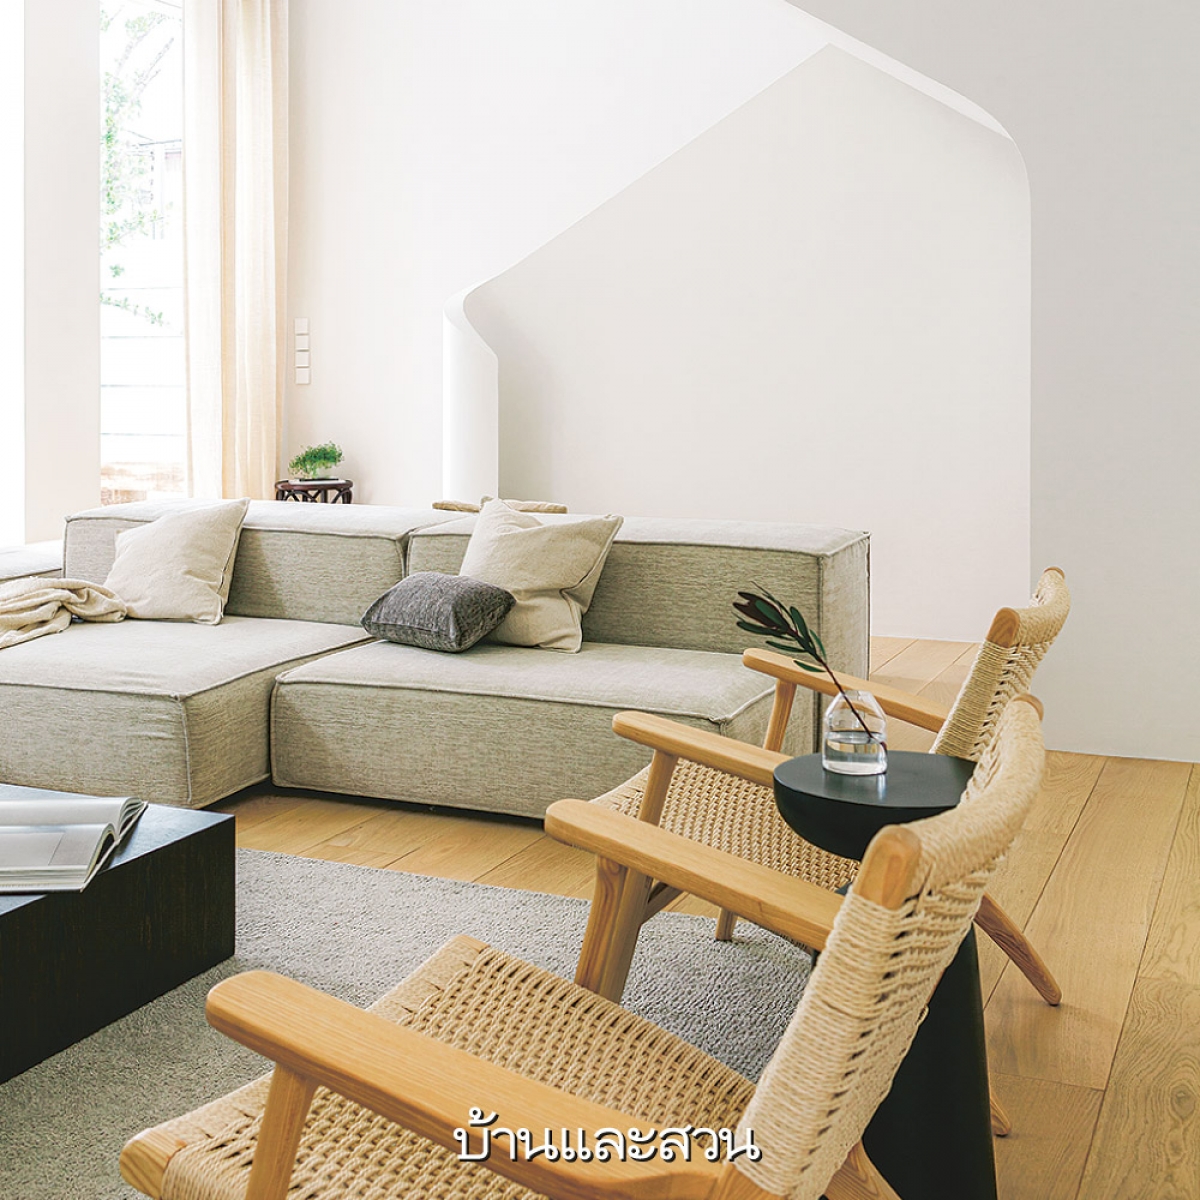 Sàn gỗ giúp căn nhà trở nên ấm áp hơn tương phản với tông nền màu trắng sáng.